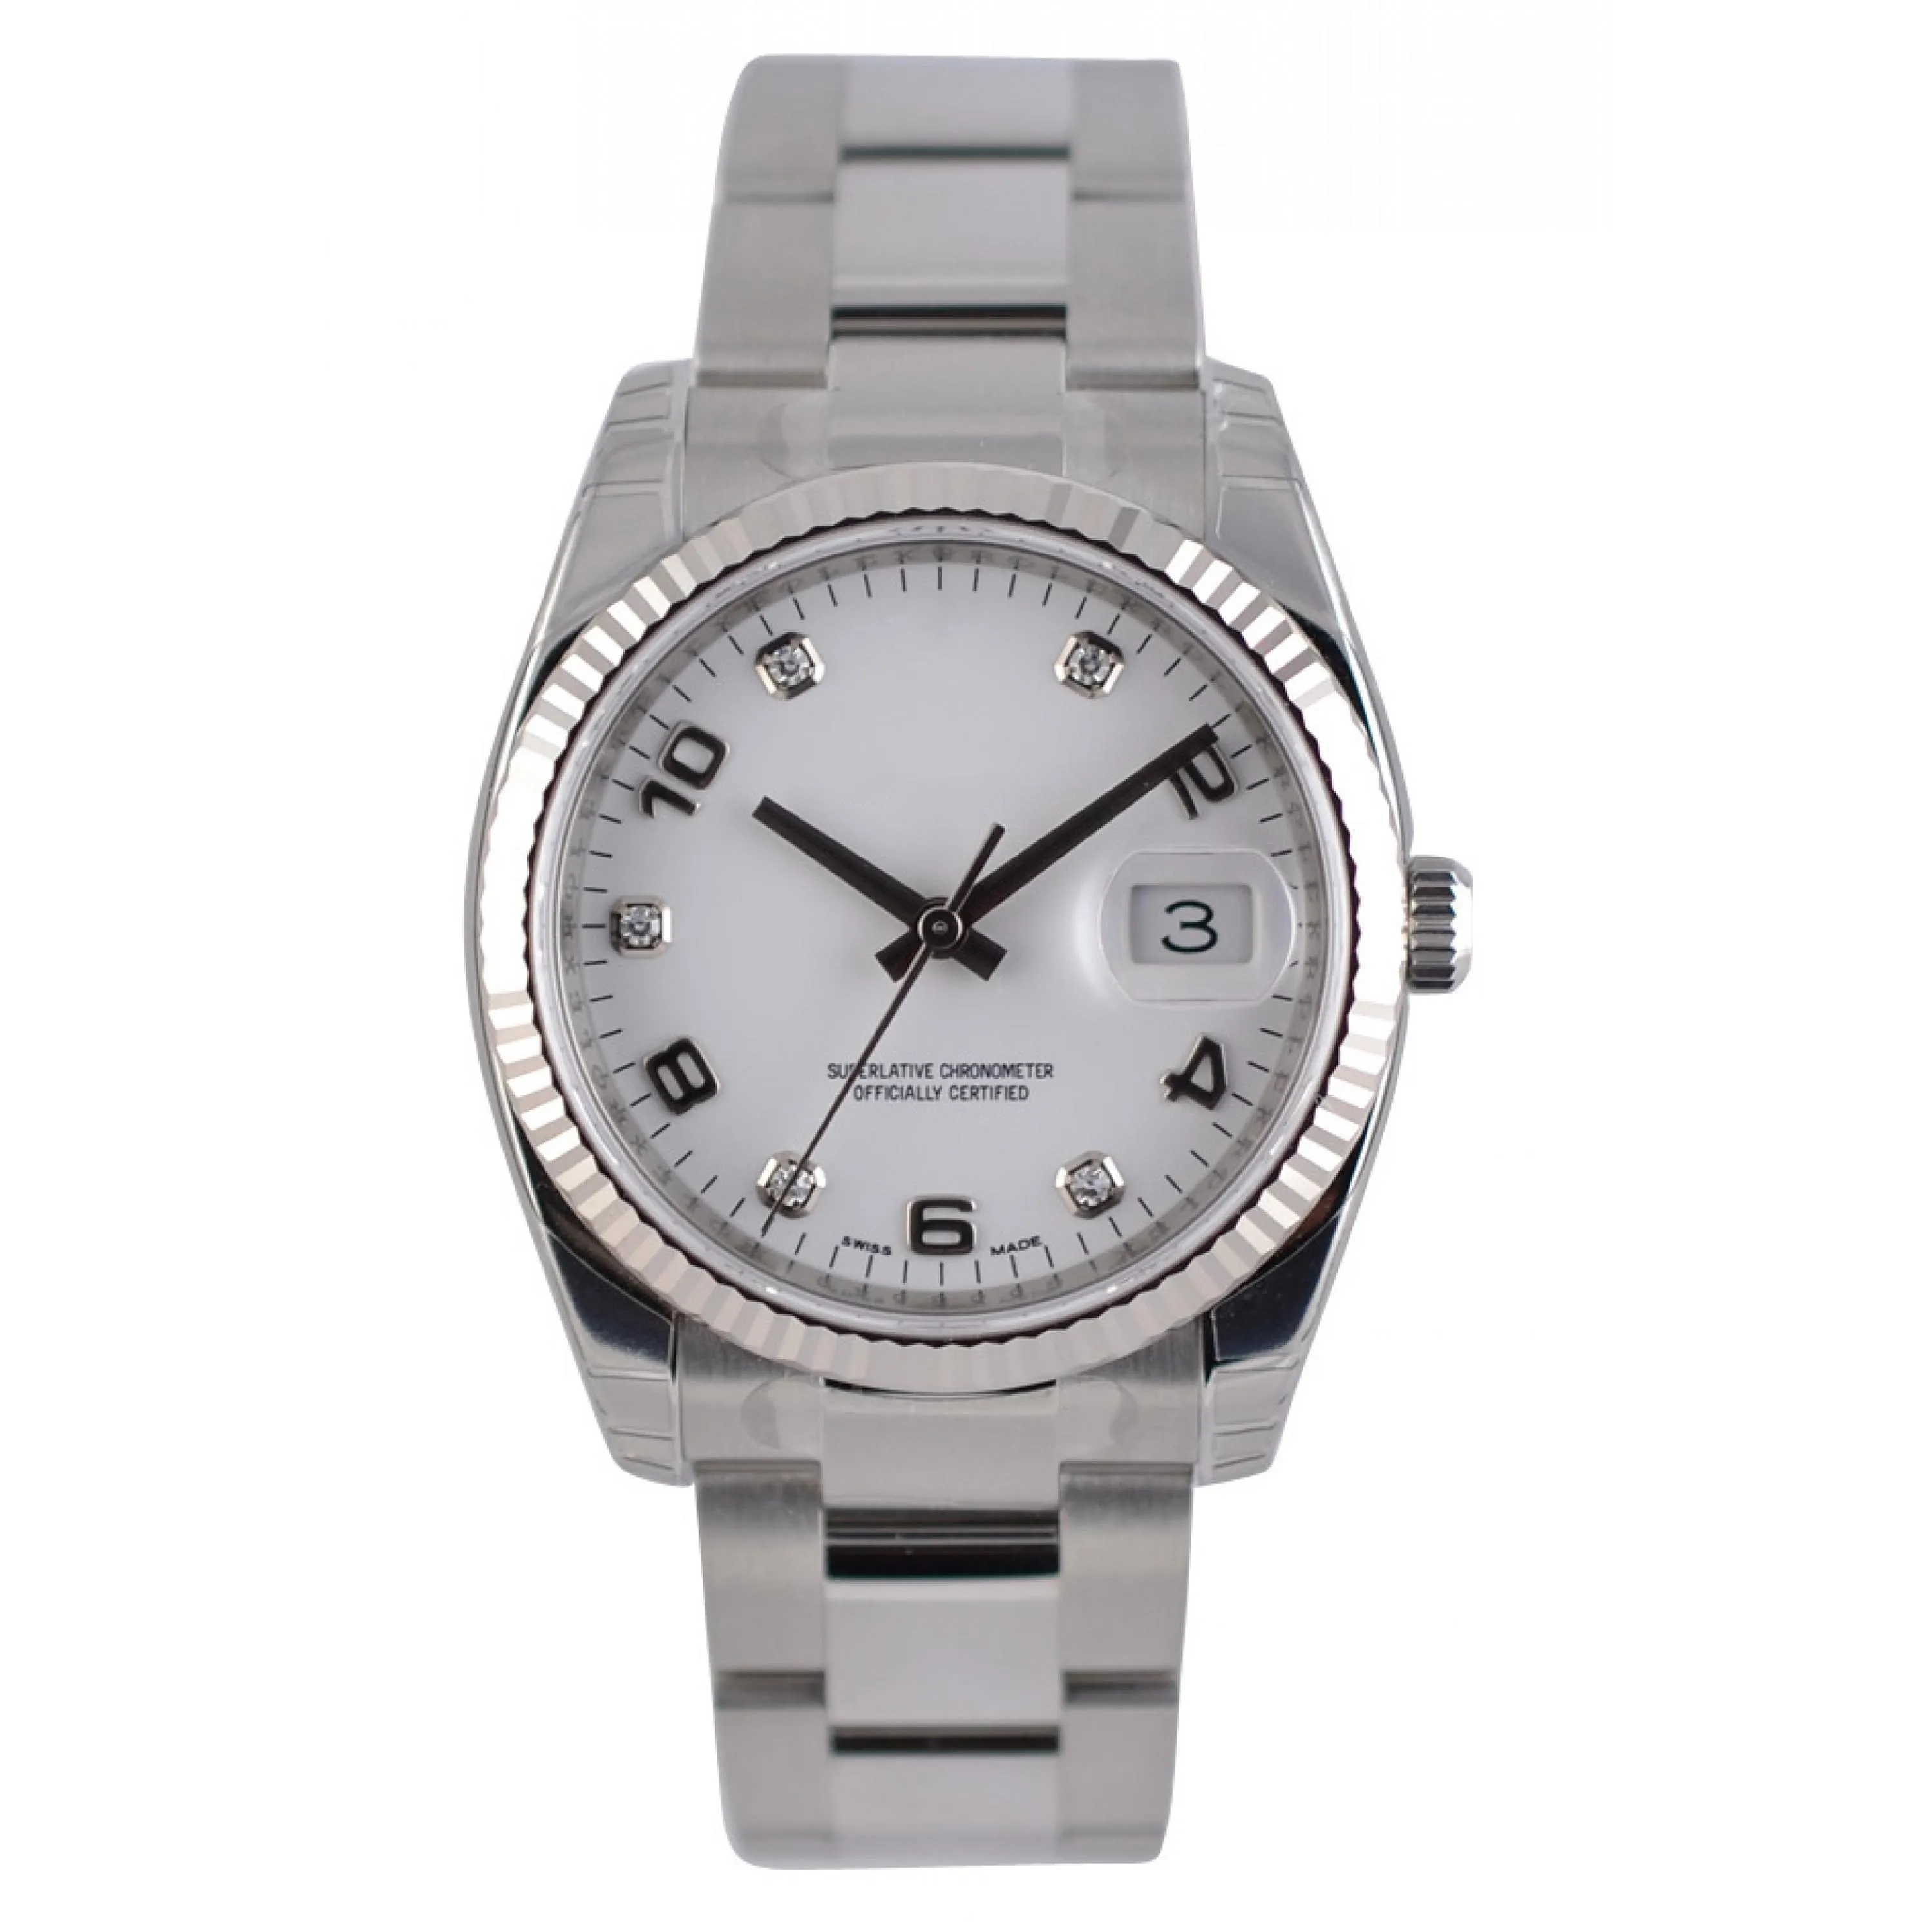 Relógios asiáticos de alta qualidade 2813 Sports Automático Relógios mecânicos de 36mm Dial branco Moda Numerais árabes Marcadores de horas Relógios de luxo Sapphire Glass 115234